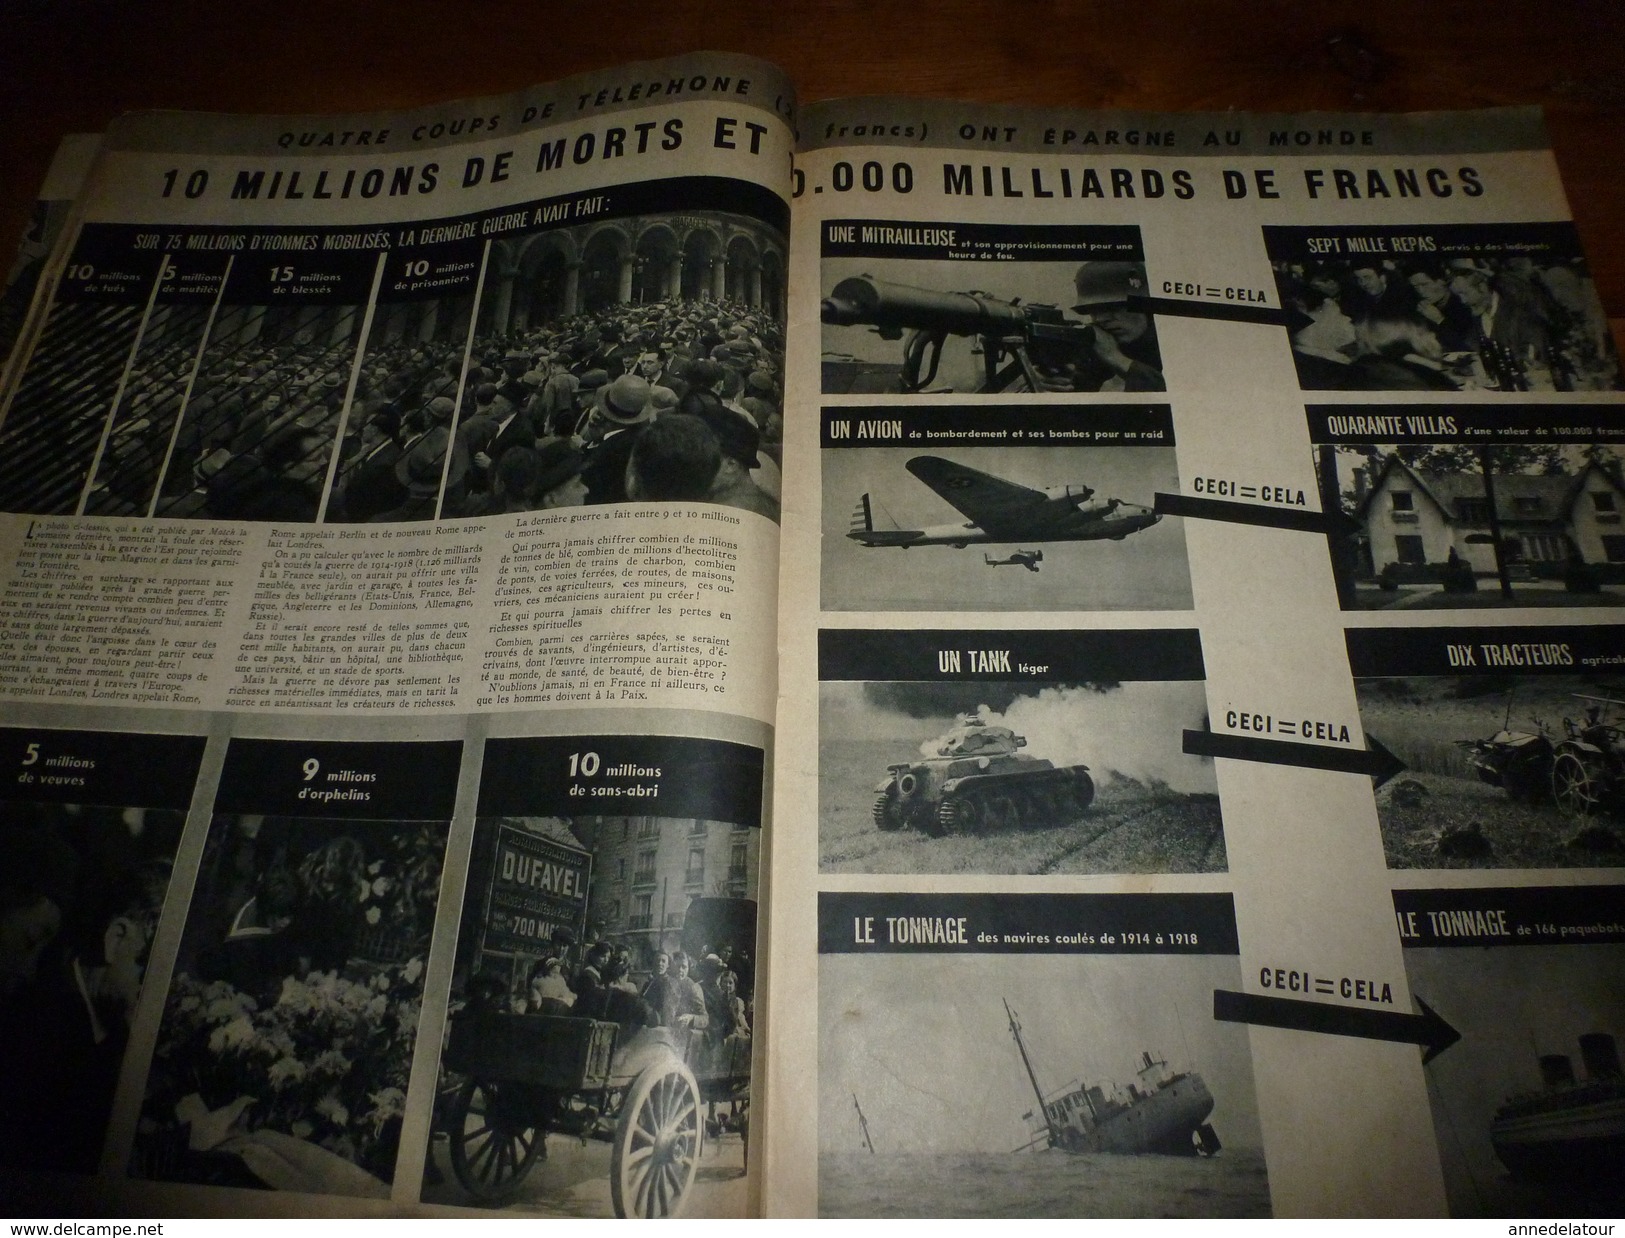 1938 MATCH:Munich +++;Ruée vers l'OR à Yellowknif +++;3 grde races en Europe;Qu'est-ce un FRANCAIS ?;Coureuse-cycliste